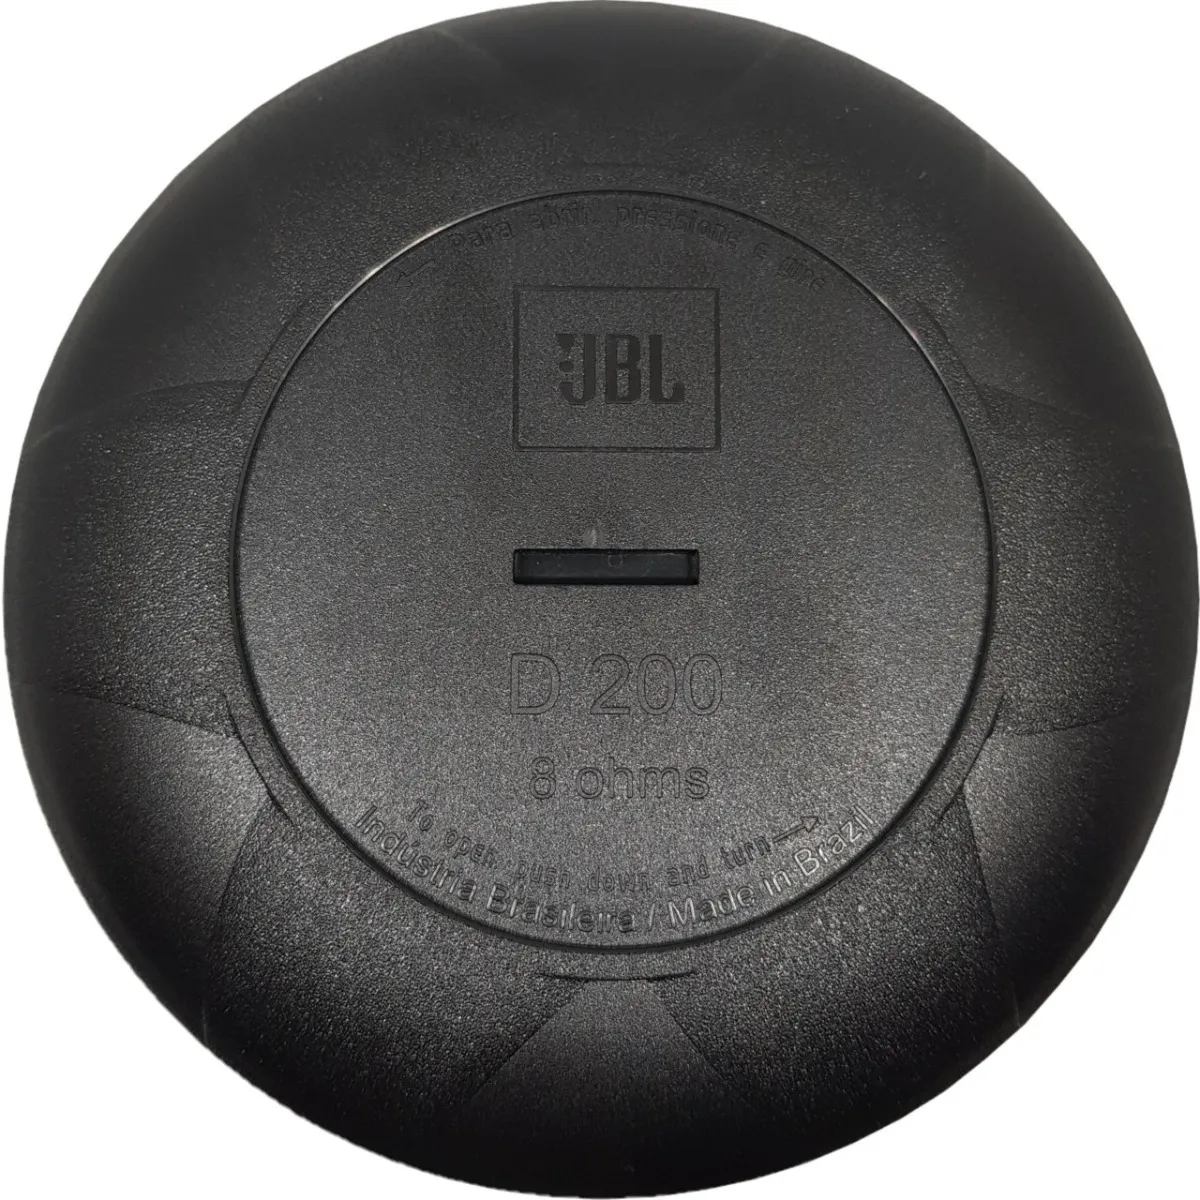 JBL D200 ドライバー 1インチ フェノリック ８オーム | カーオーディオ専門店 Casa do Som